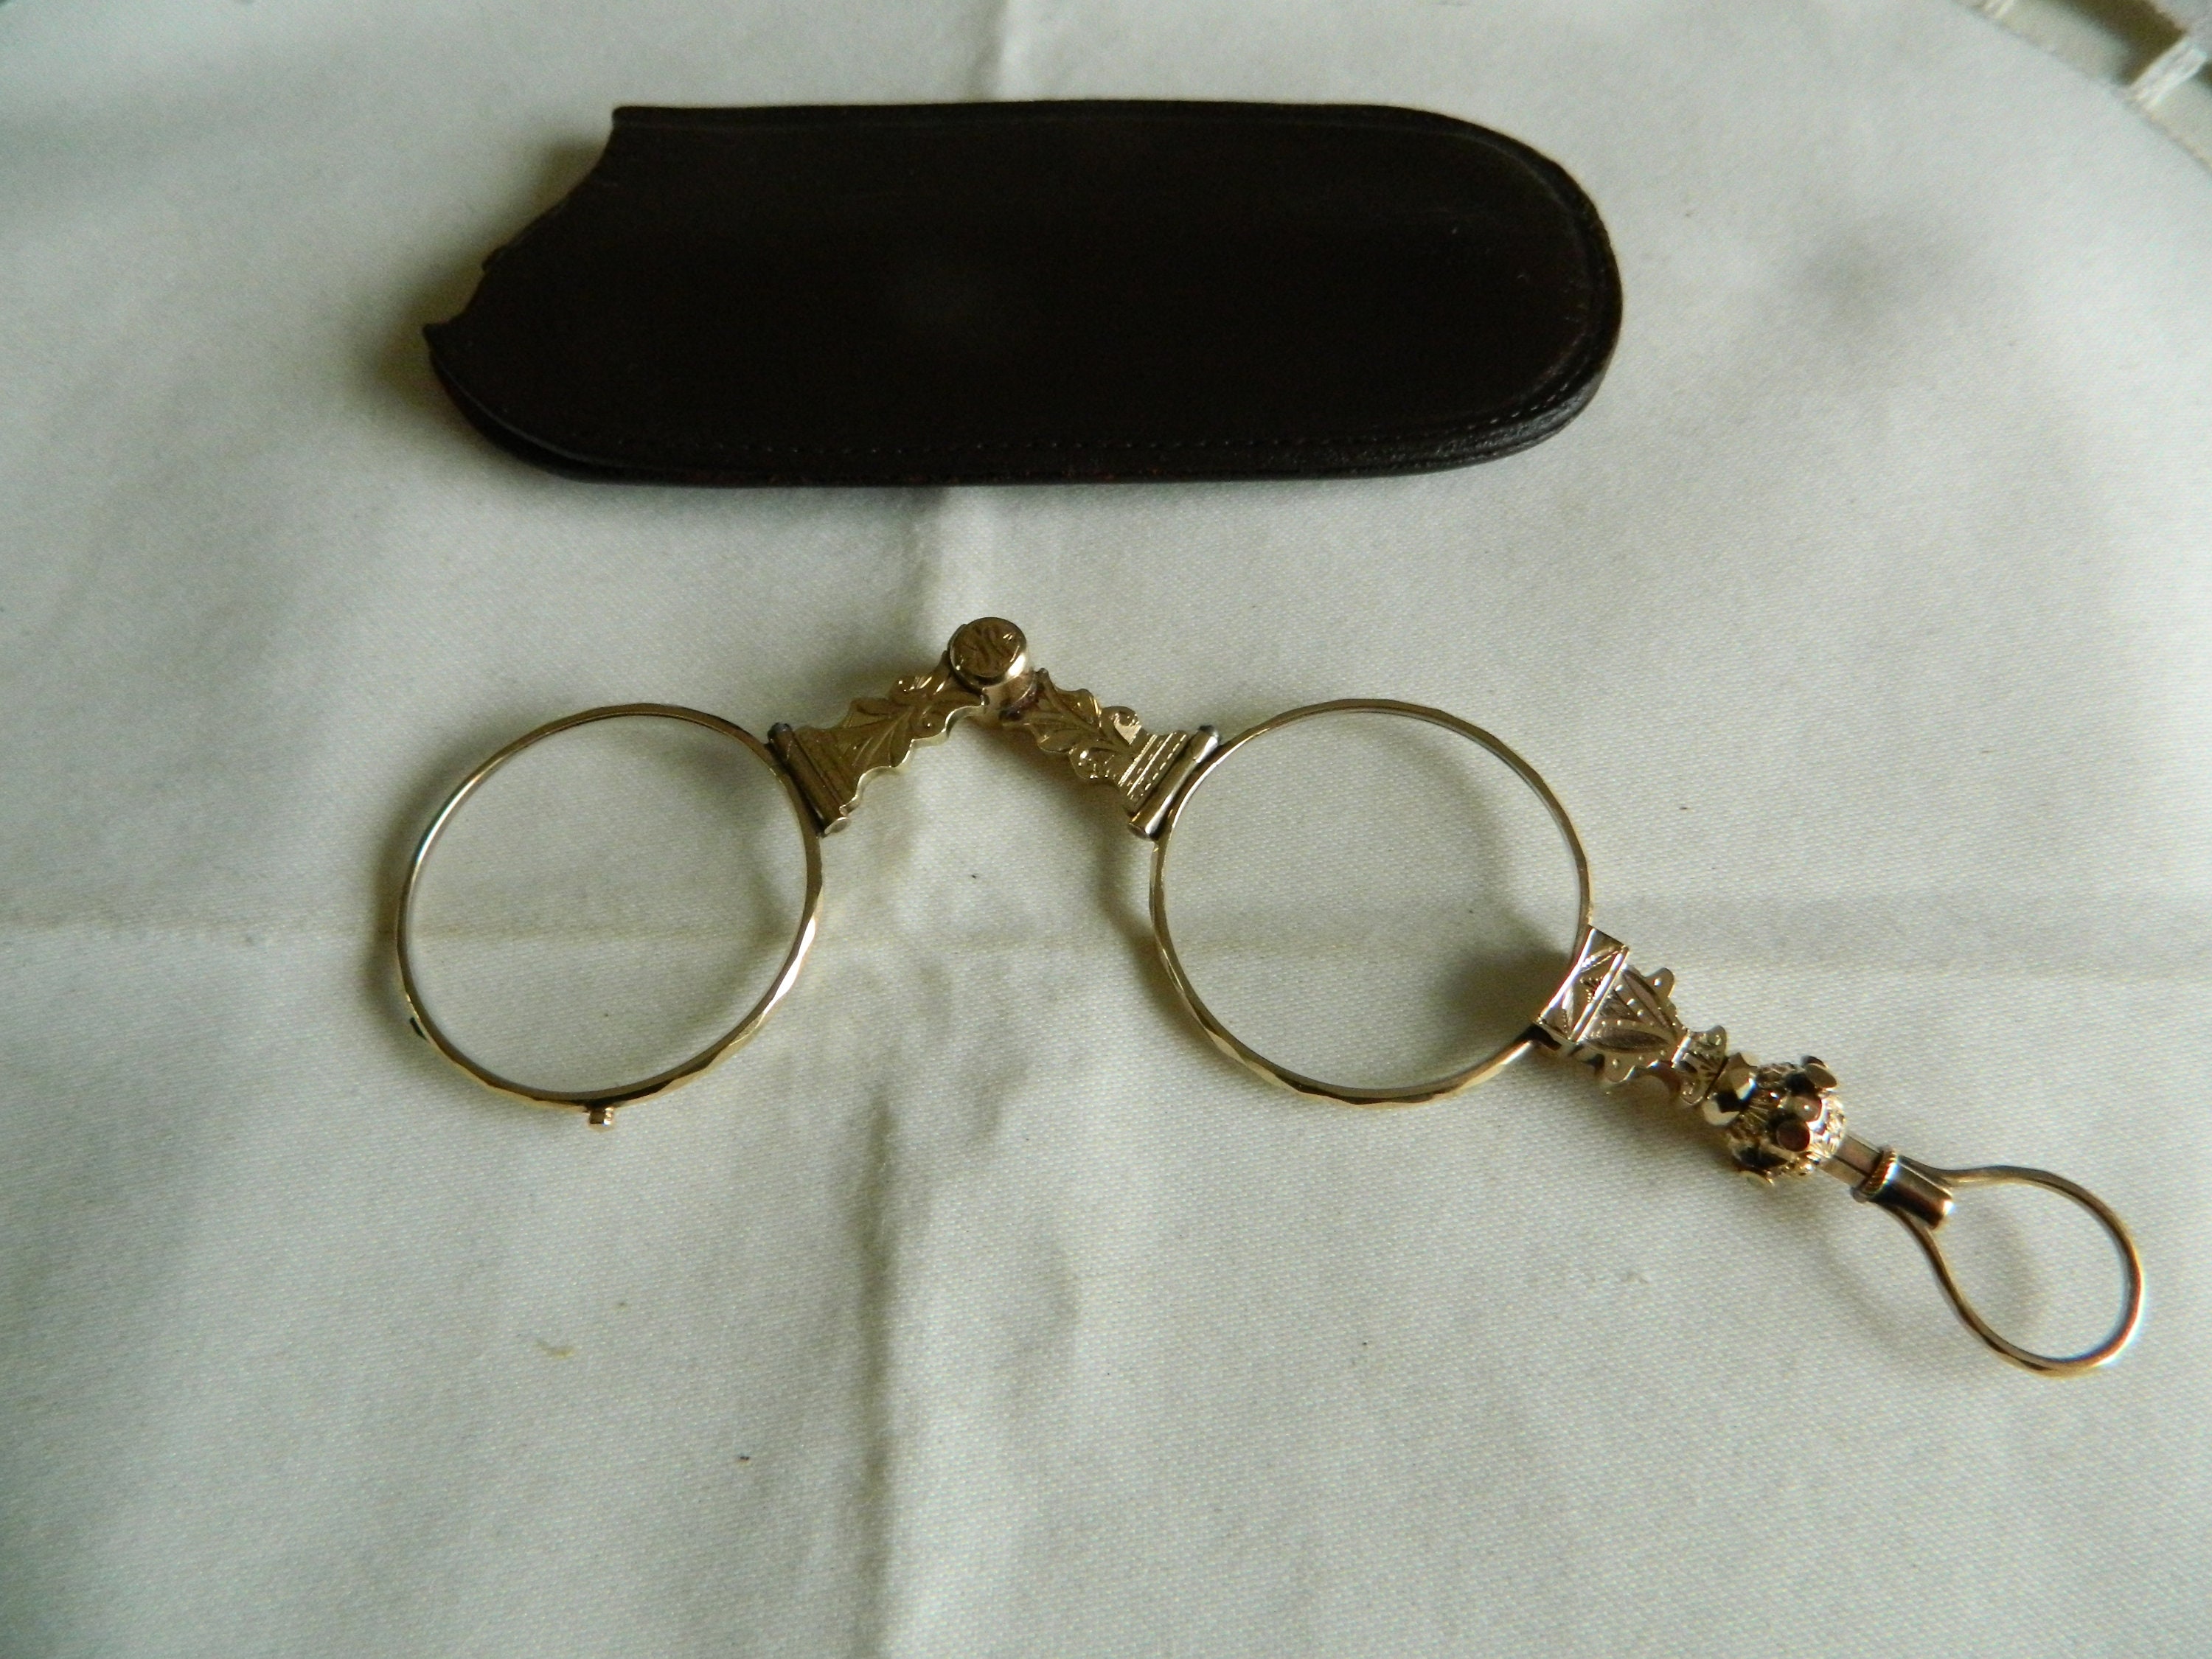 Accessoires Zonnebrillen & Eyewear Brillen Lorgnettes Spectacles gold tone MS1-10 